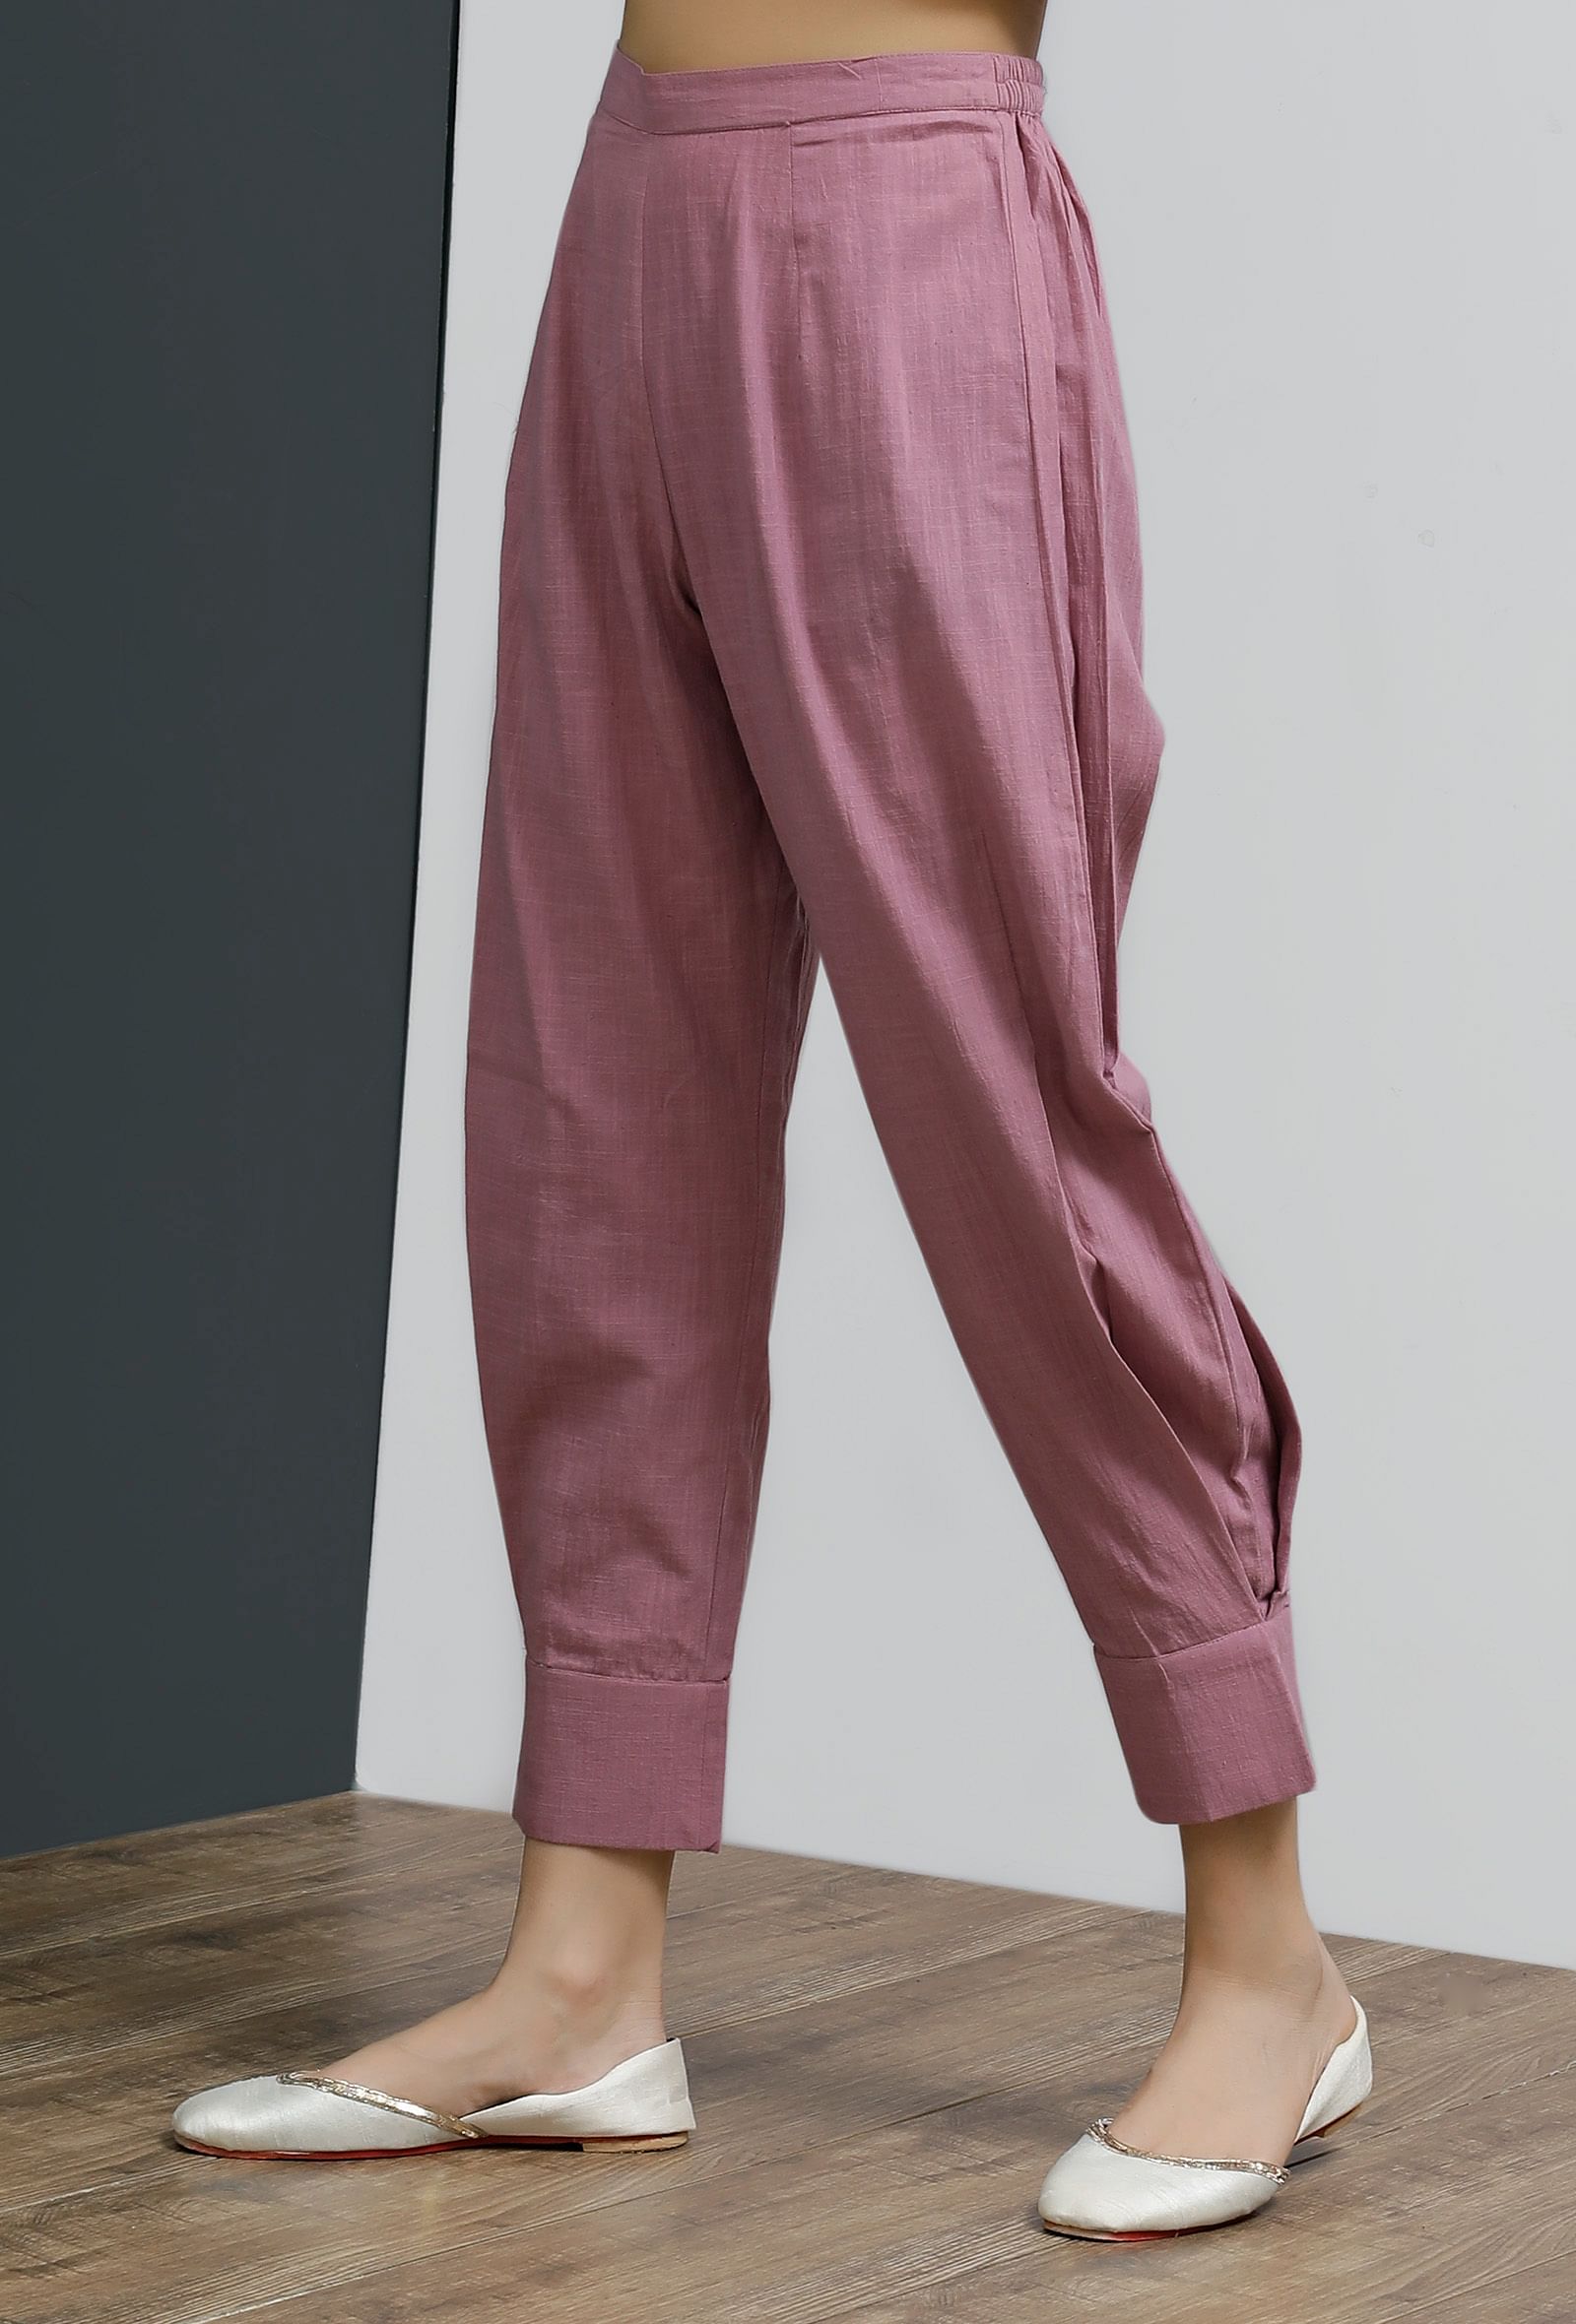 Solid Onion Pink Side Pleated Pants – TJORI